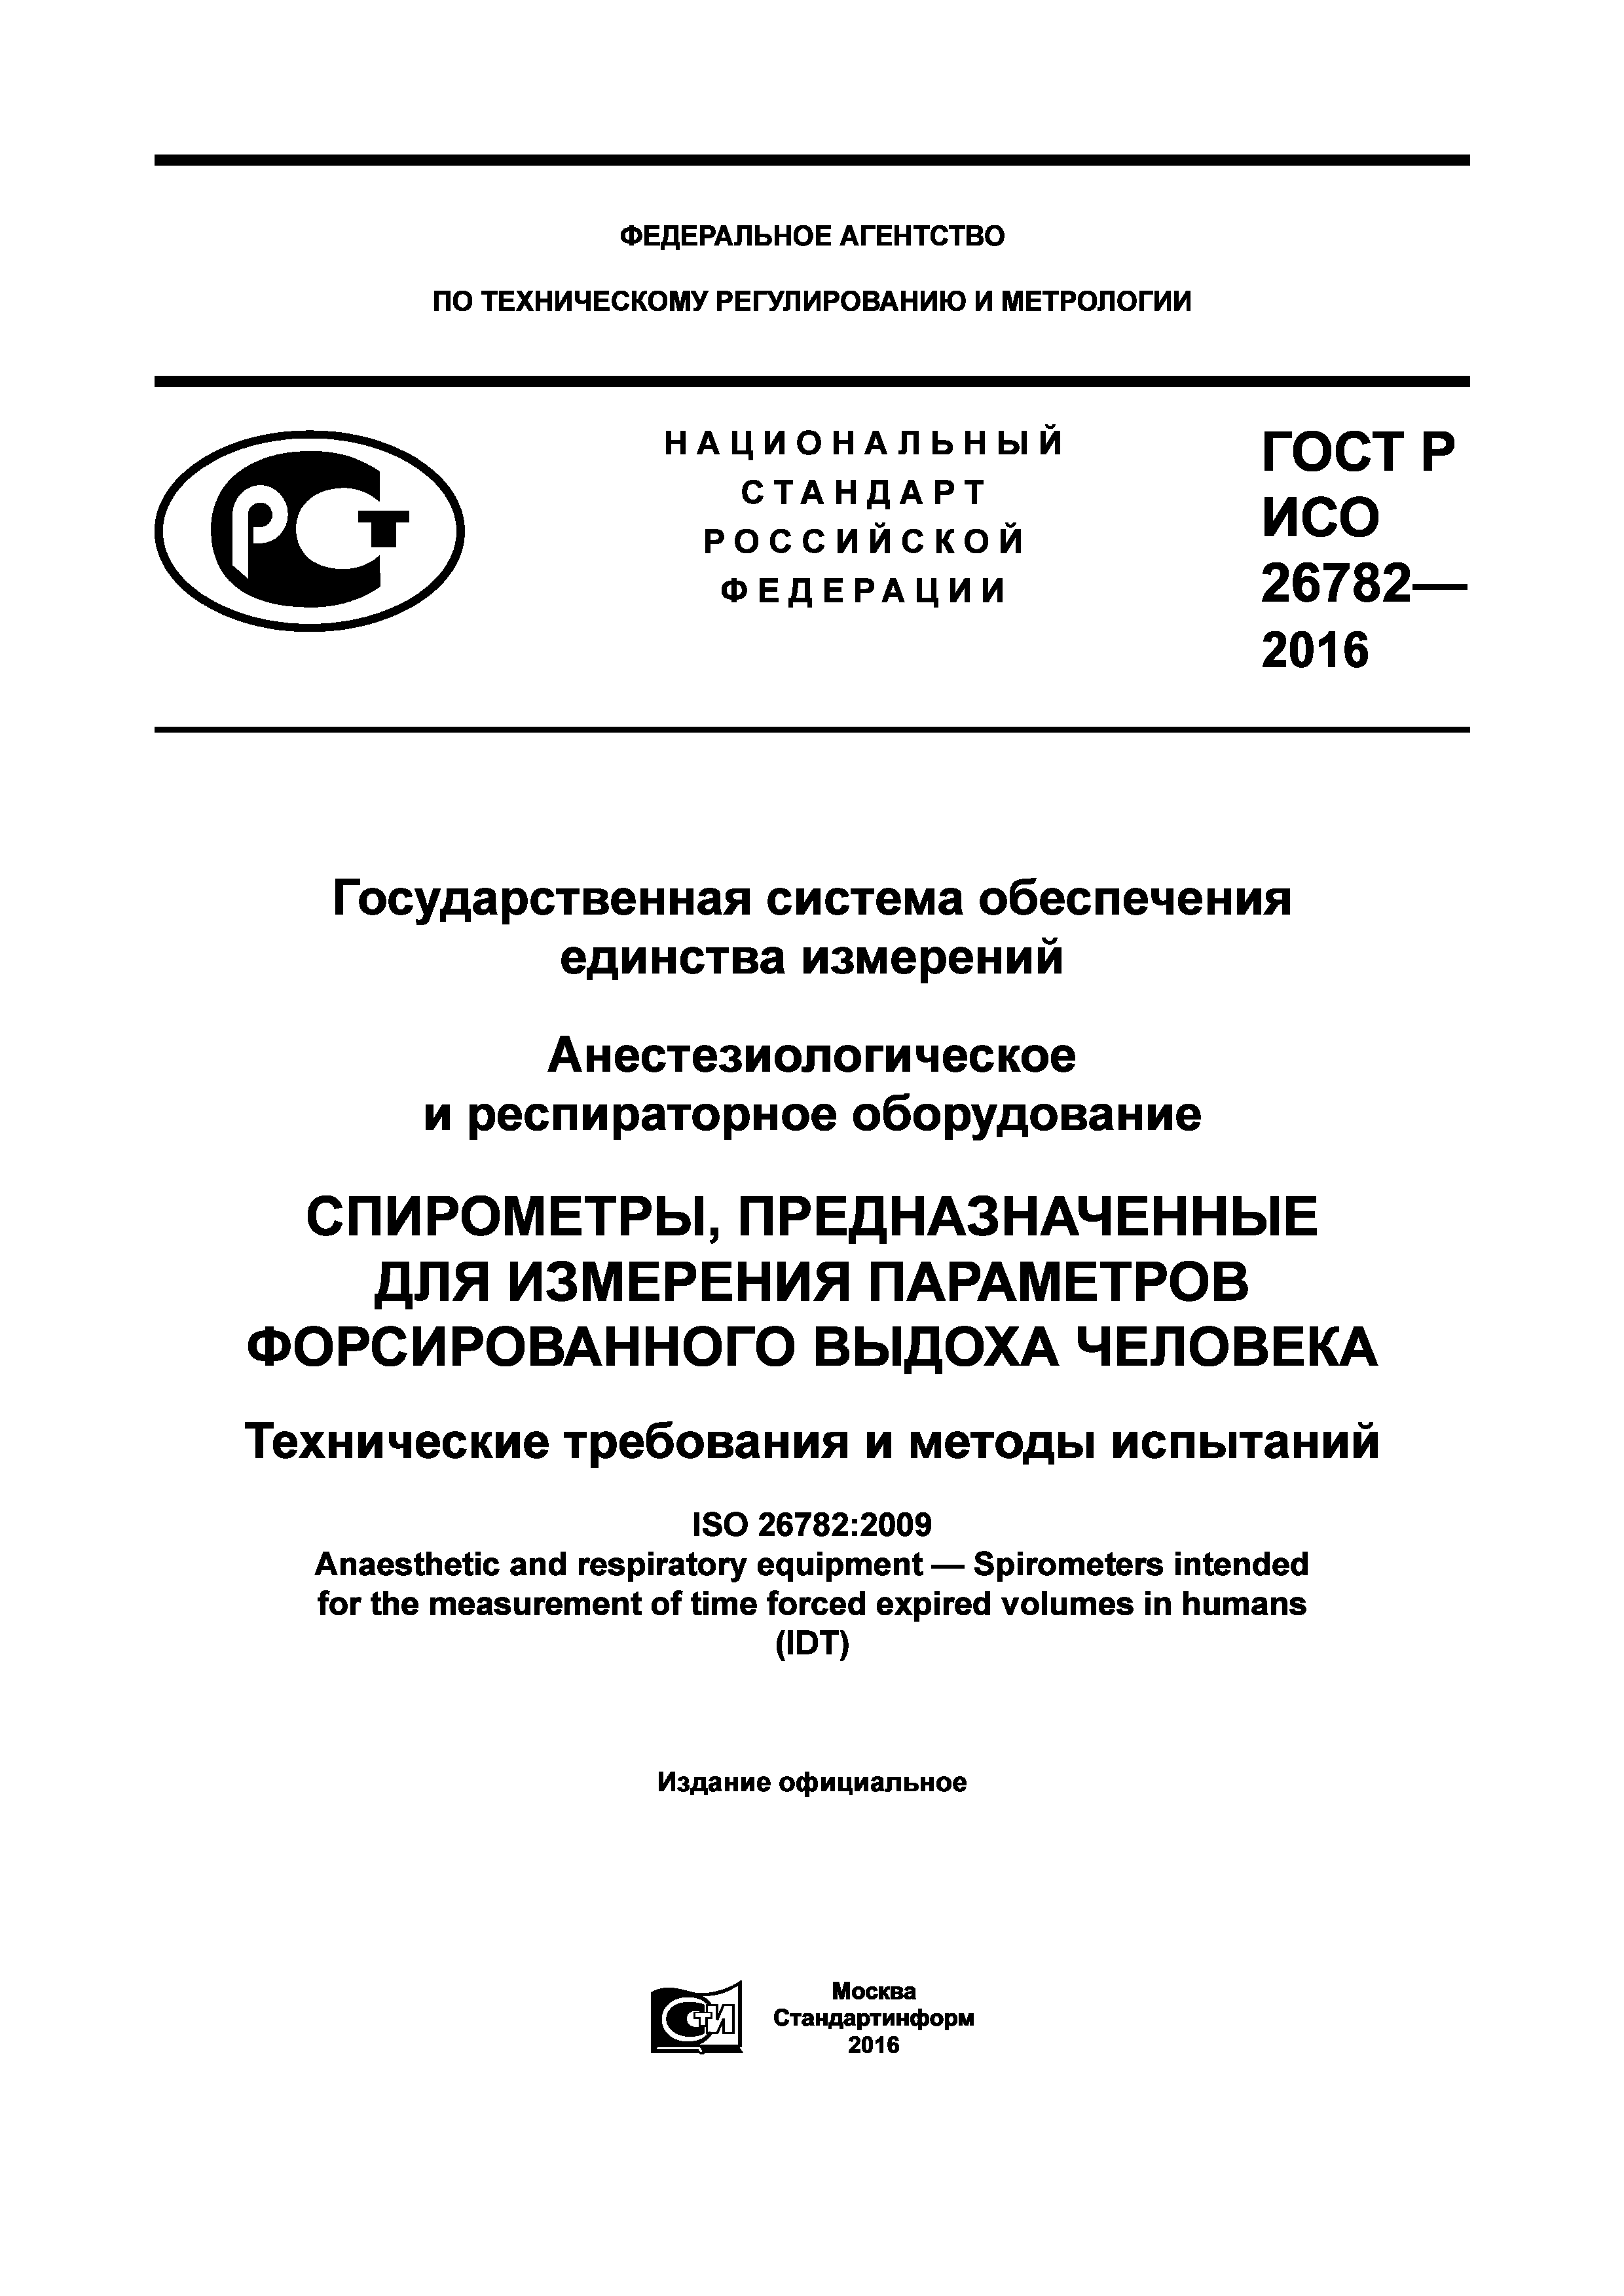 ГОСТ Р ИСО 26782-2016